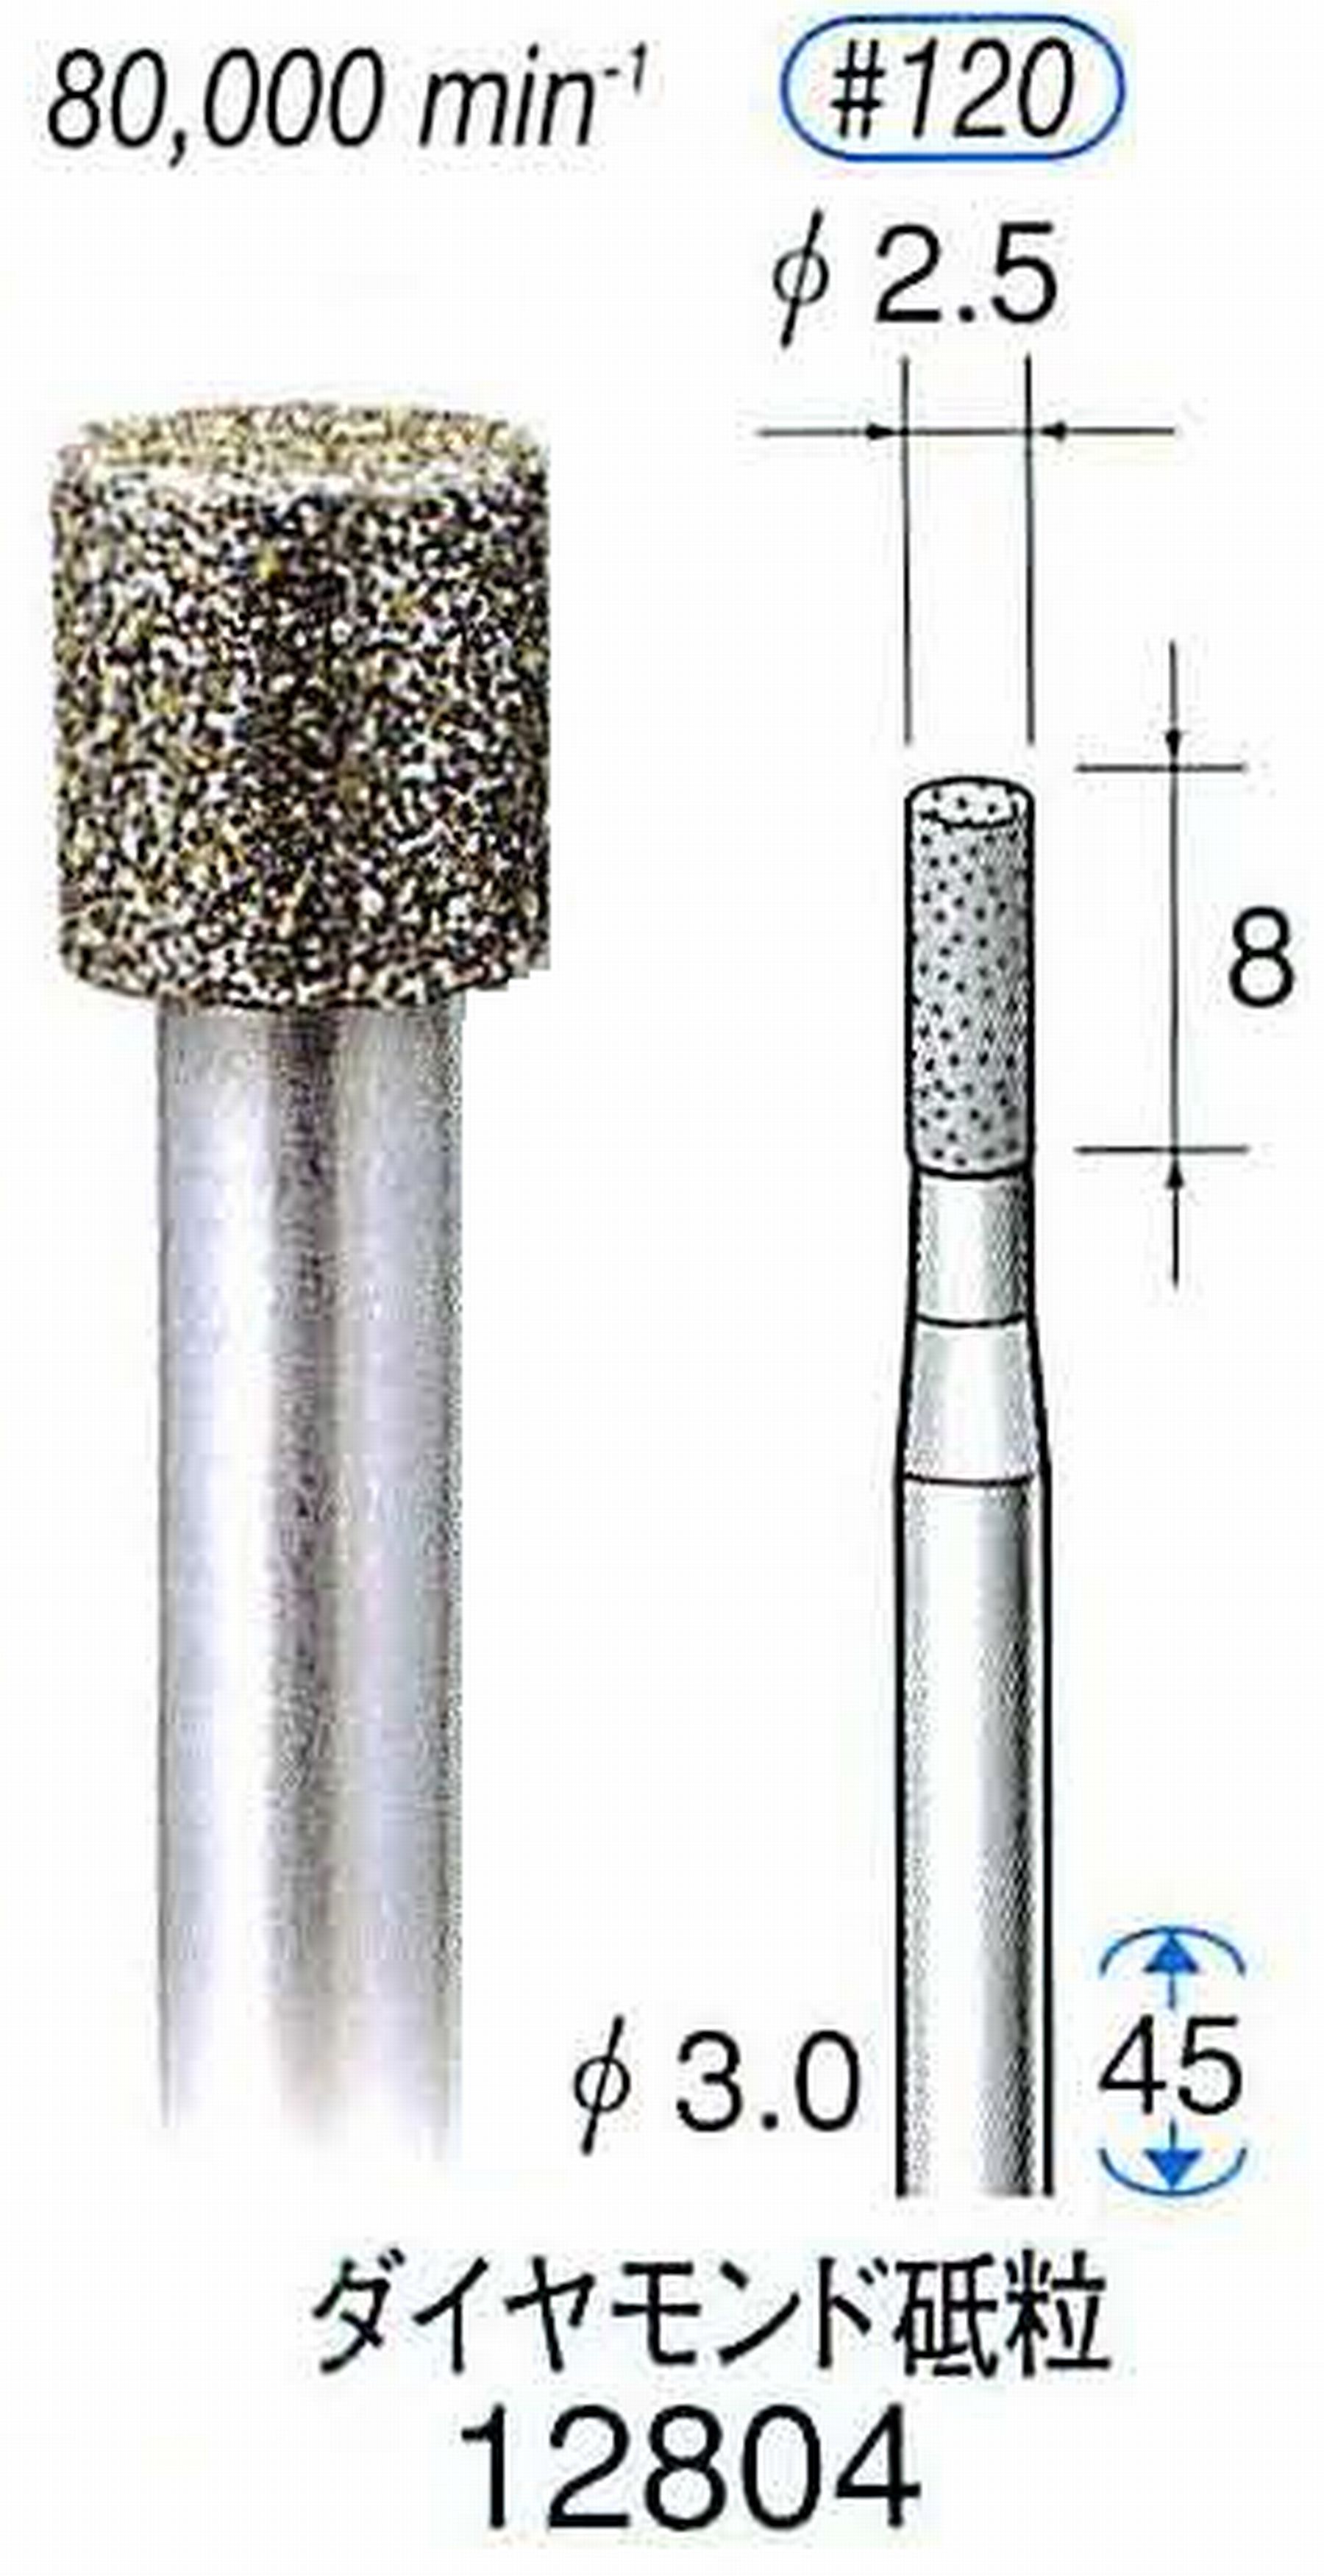 ナカニシ/NAKANISHI クラフト・ホビー用ダイヤモンドバー ダイヤモンド砥粒 軸径(シャンク)φ3.0mm 12804